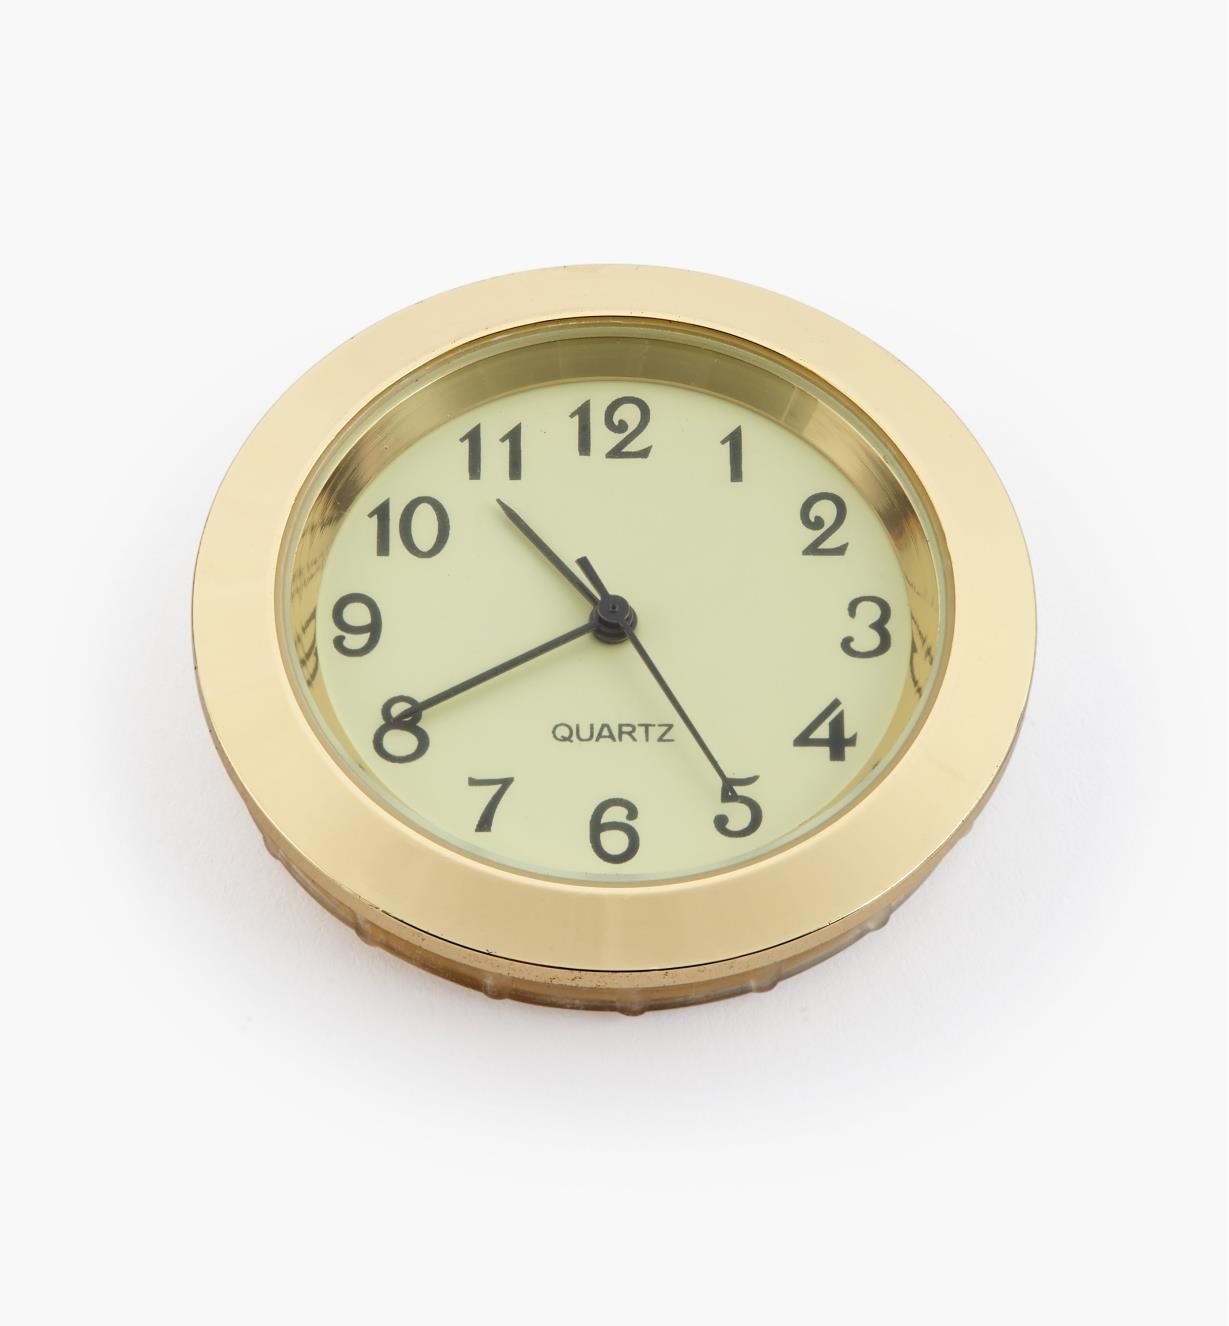 44K0154 - Horloge, cadran ivoire à chiffres arabes, lunette or